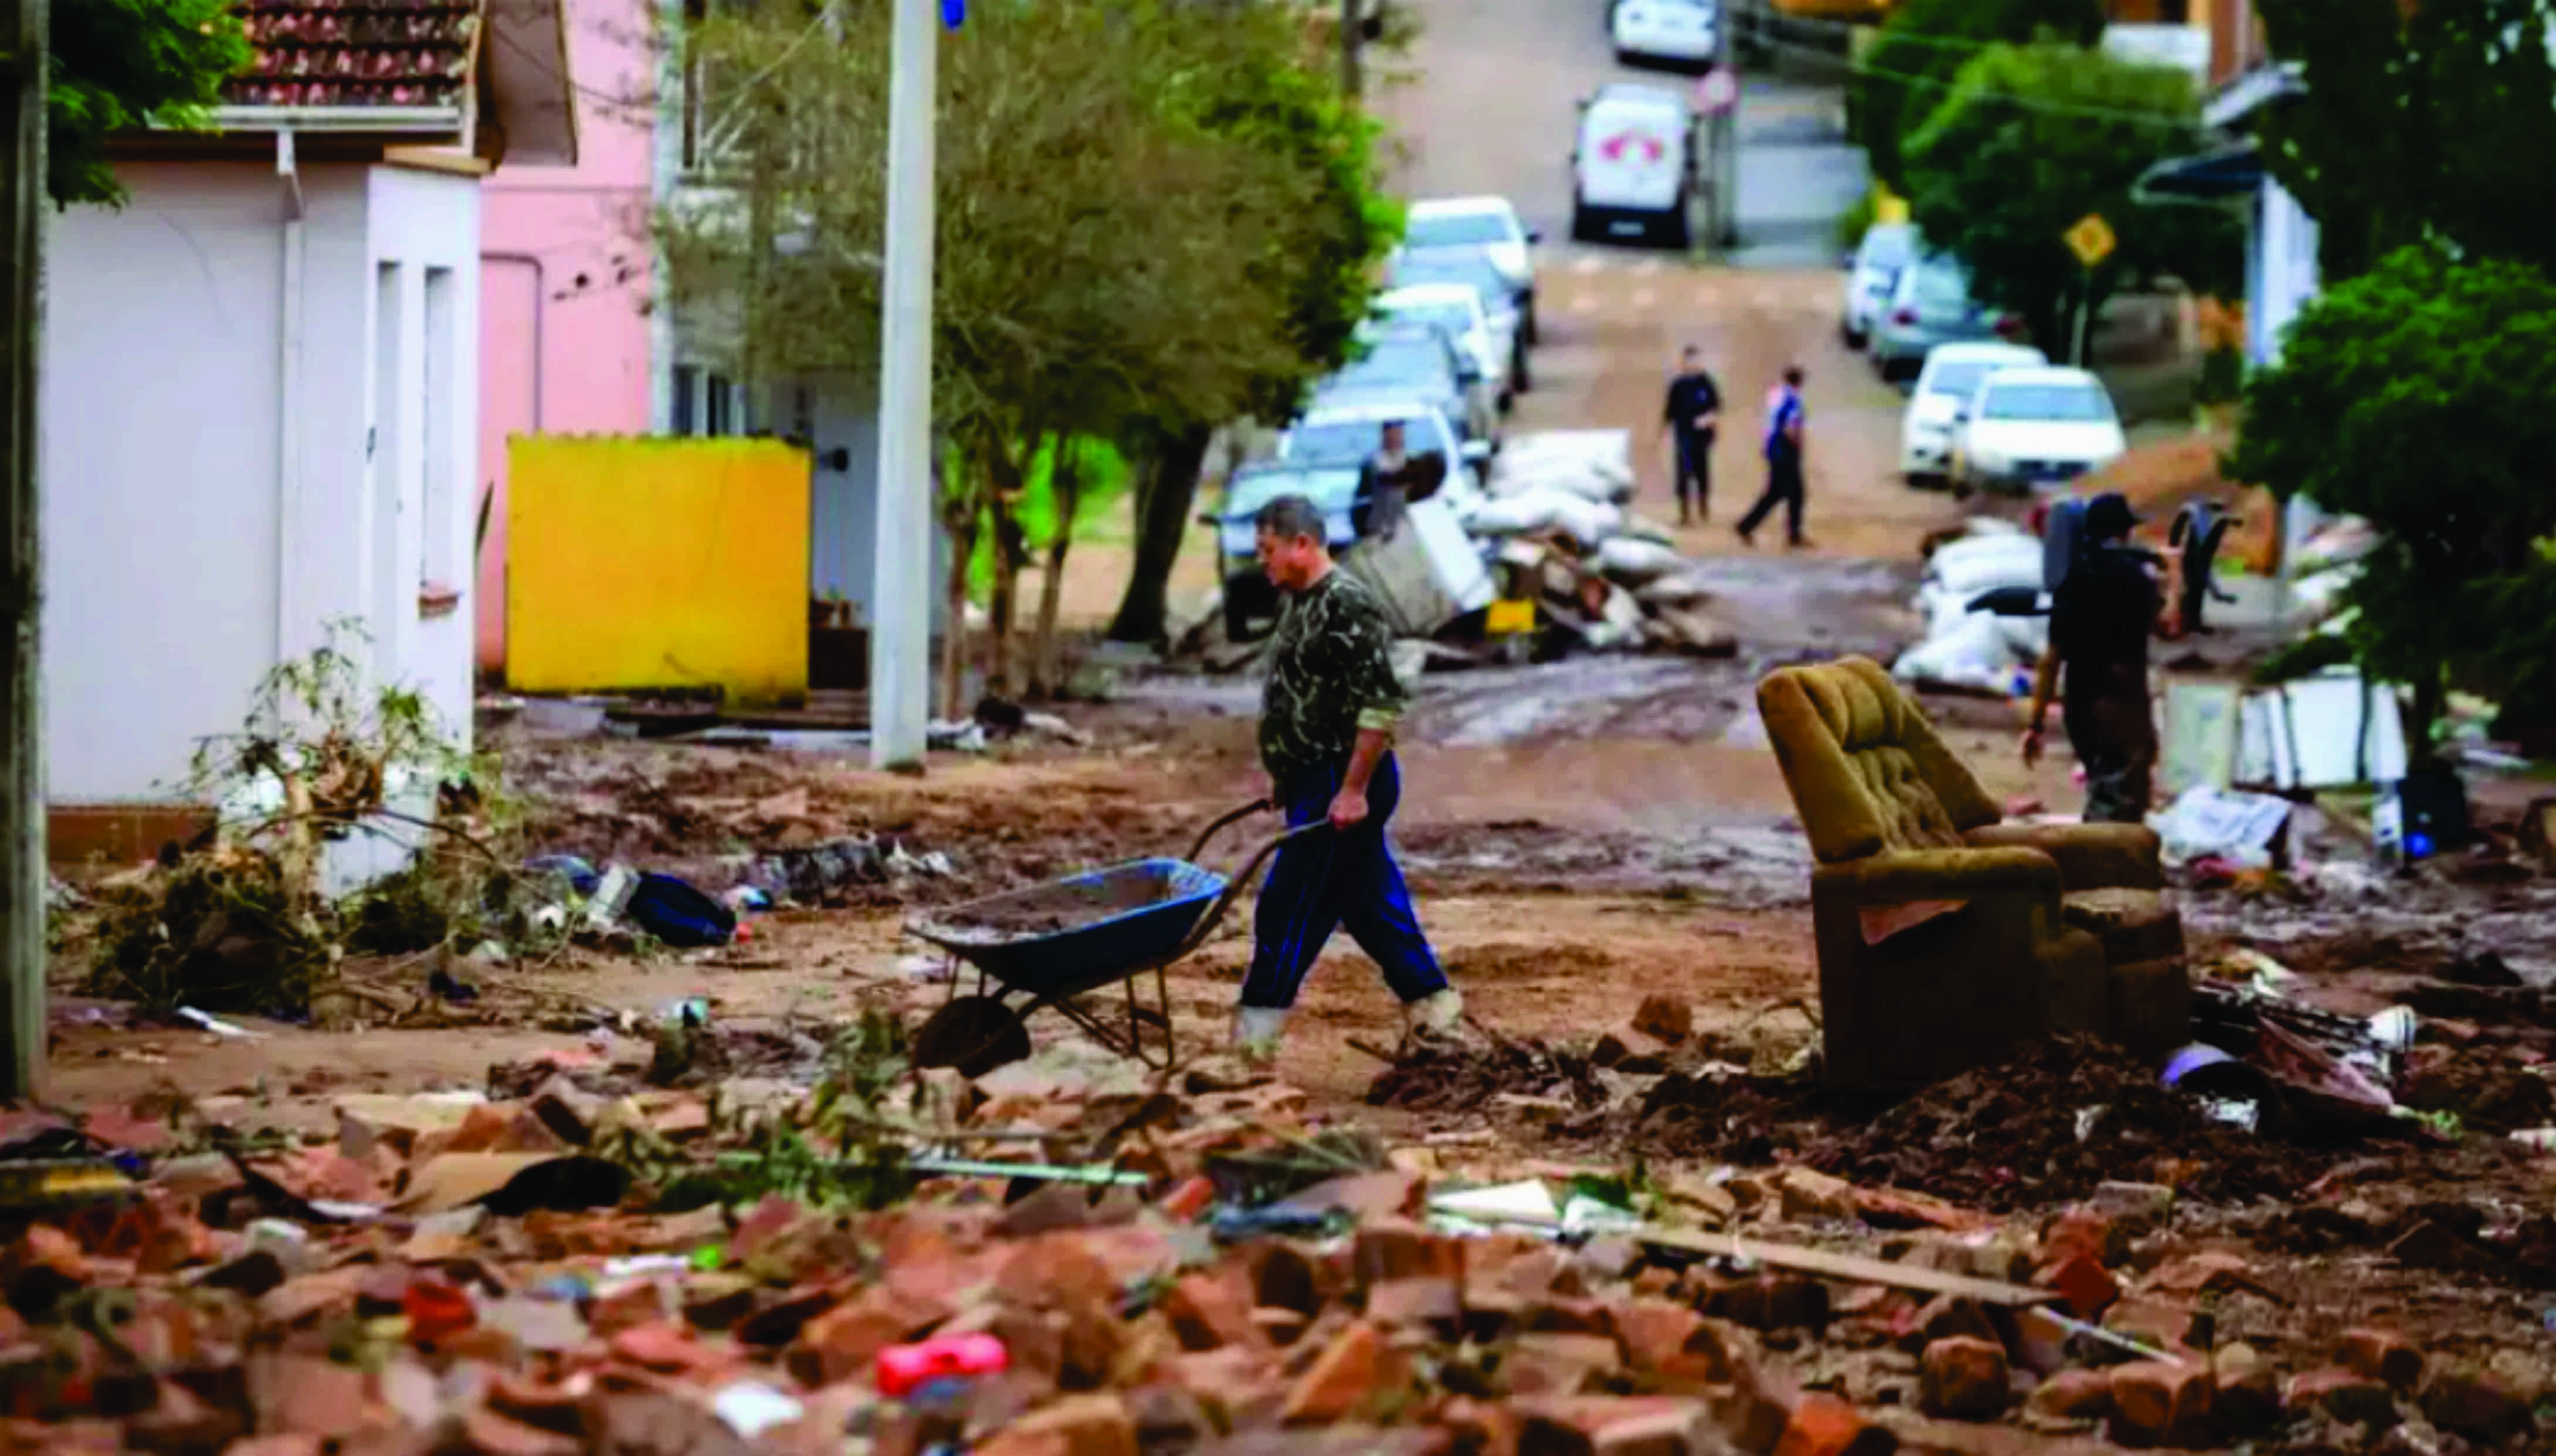 Ajude o RS! Paraná envia caminhões com roupas, água e alimentos para vítimas das chuvas; saiba como doar